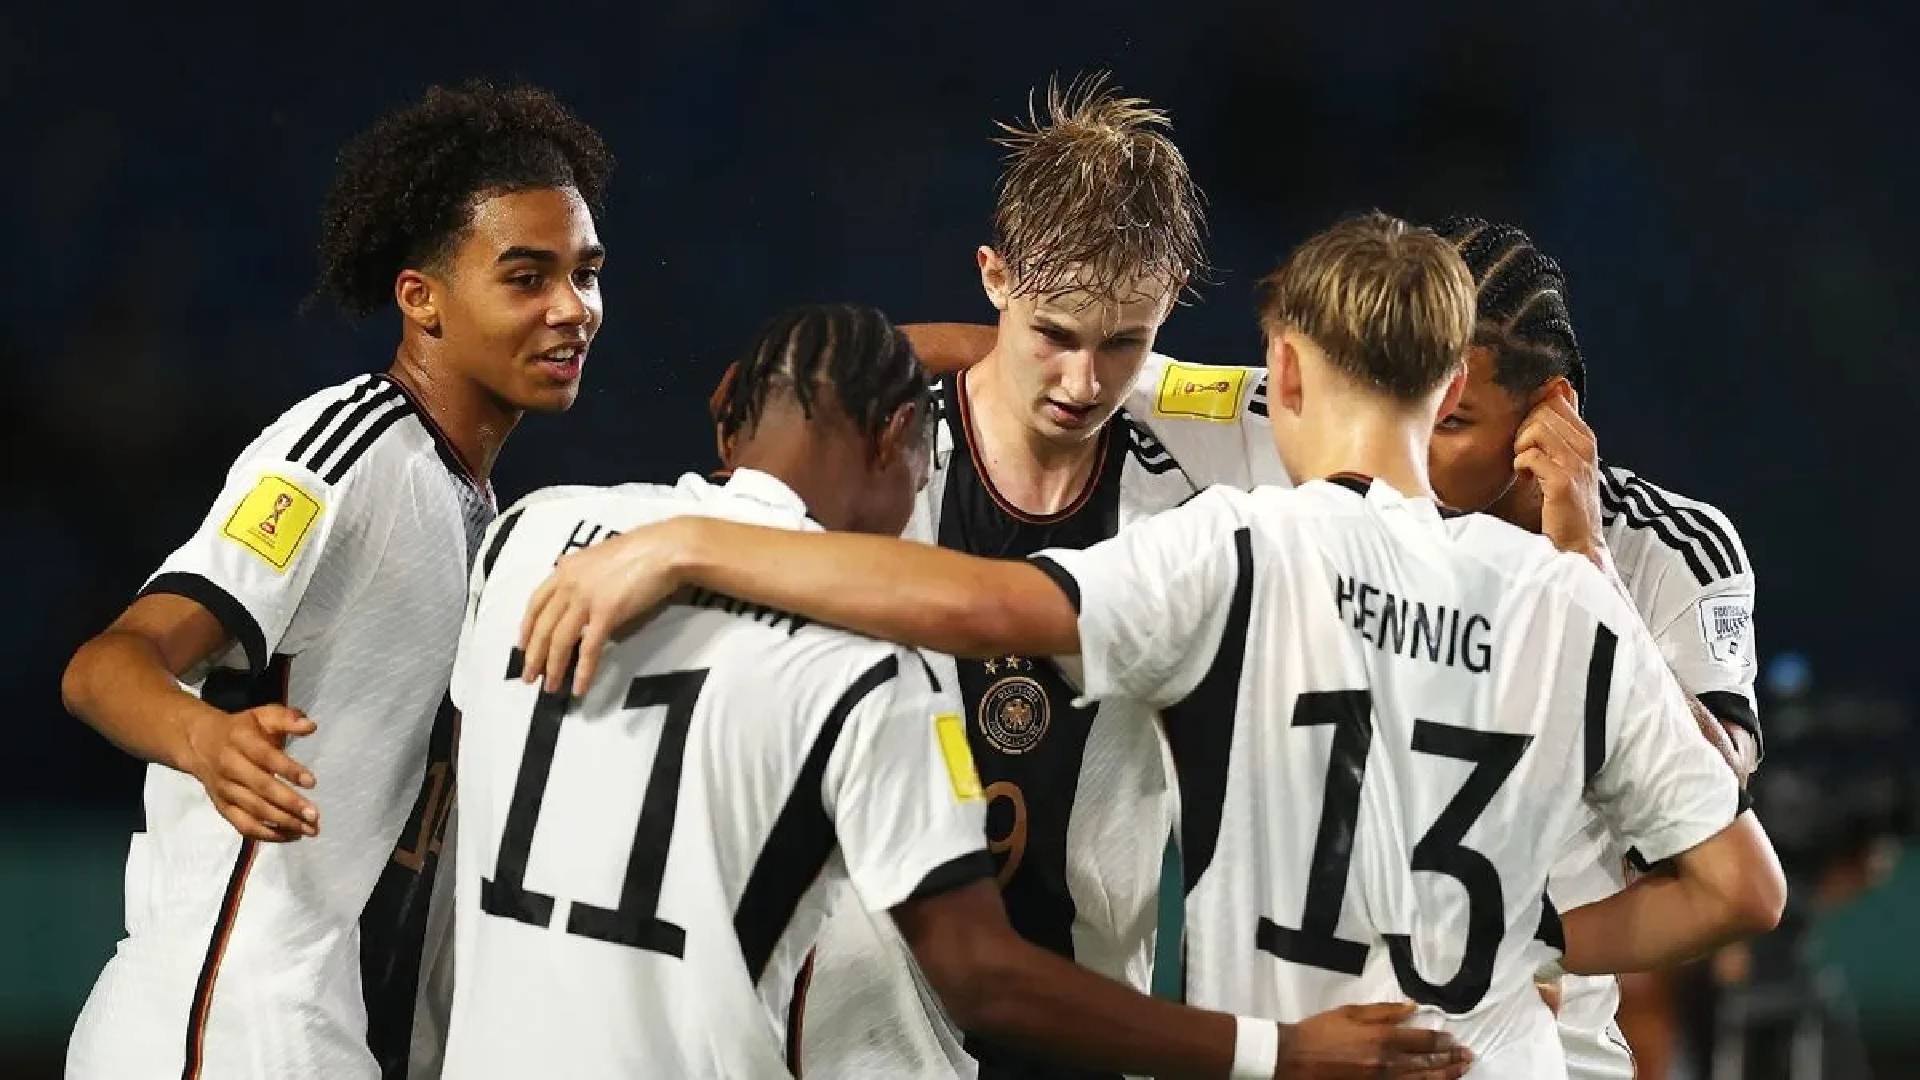 Jerman U17 1 Piala Dunia U17: Jerman Mudah Bantai Venezuela